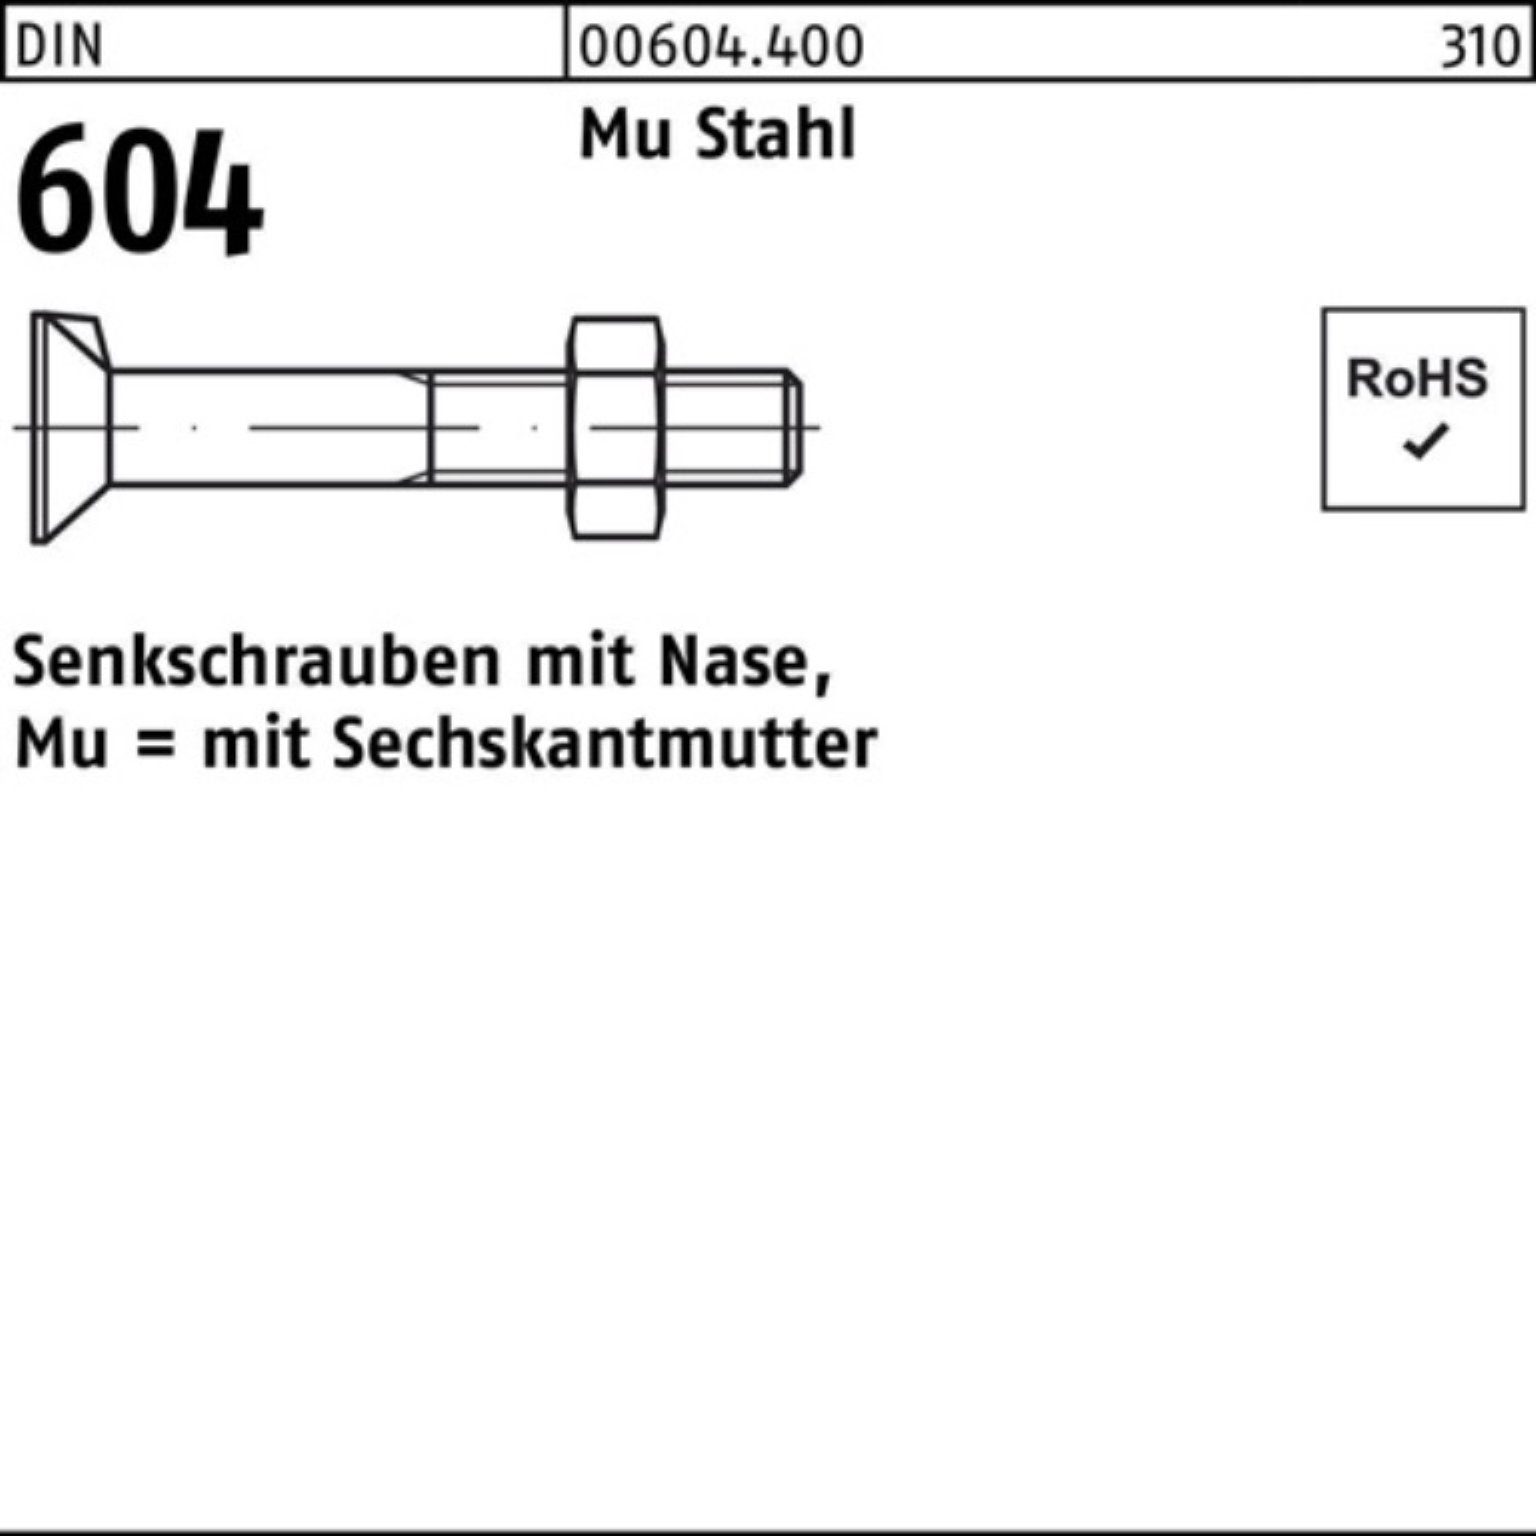 Reyher Senkschraube 100er Pack Senkschraube DIN 604 Nase/6-ktmutter M24x 130 Mu Stahl 4.6